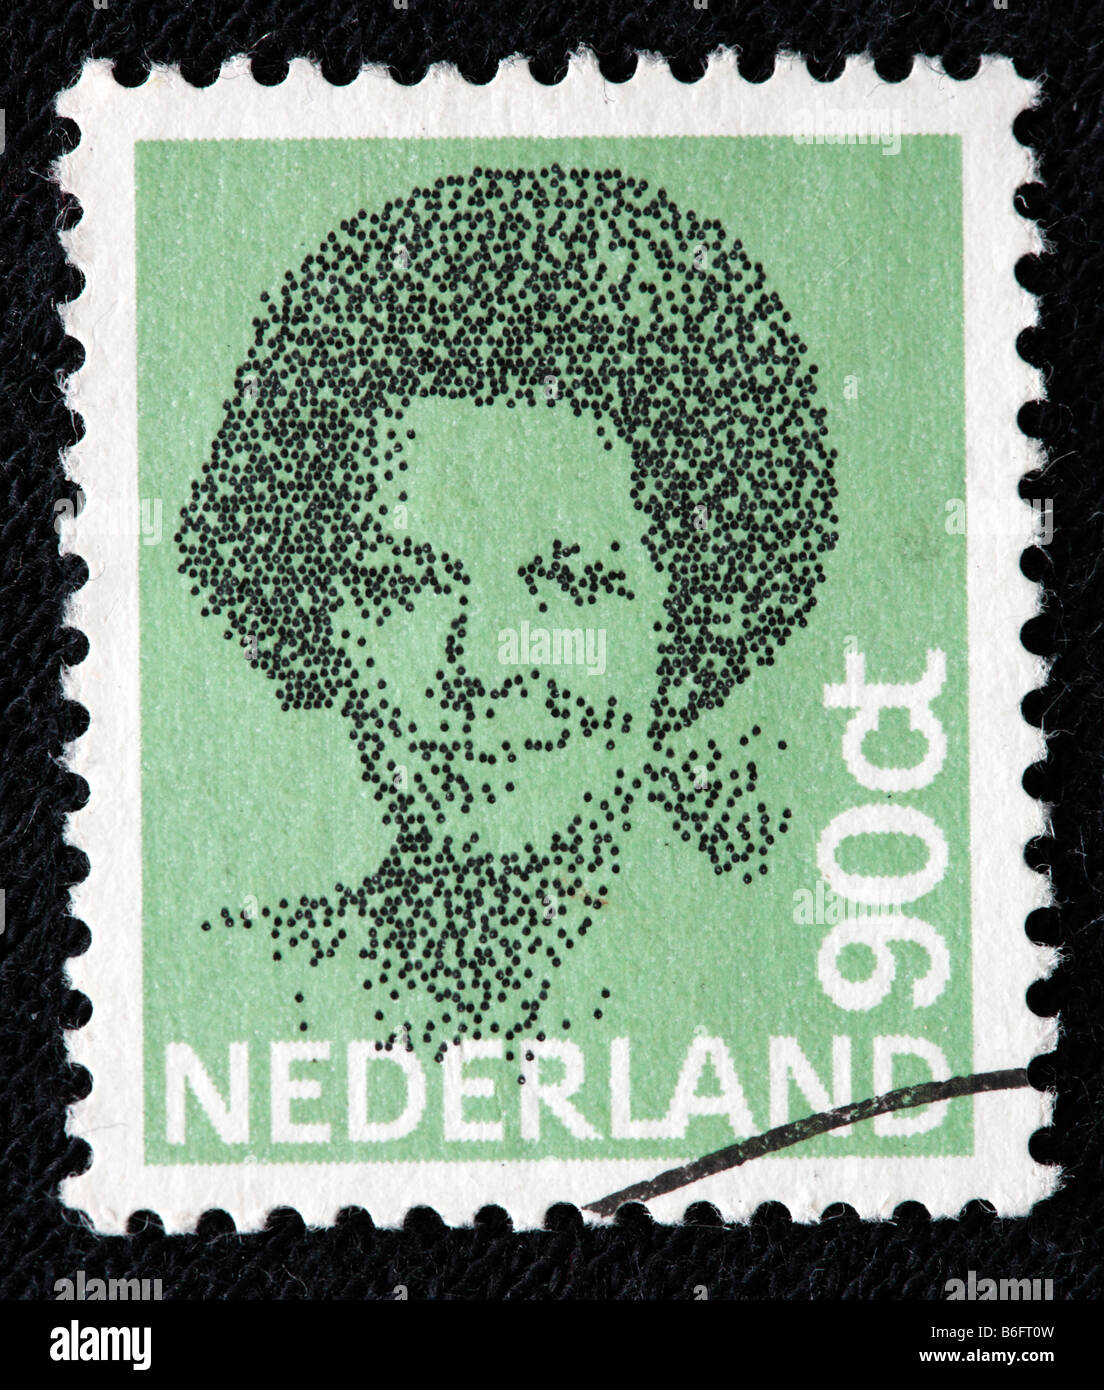 La Reine Beatrix des Pays-Bas (1980 à présent), timbre-poste, Pays-Bas Banque D'Images